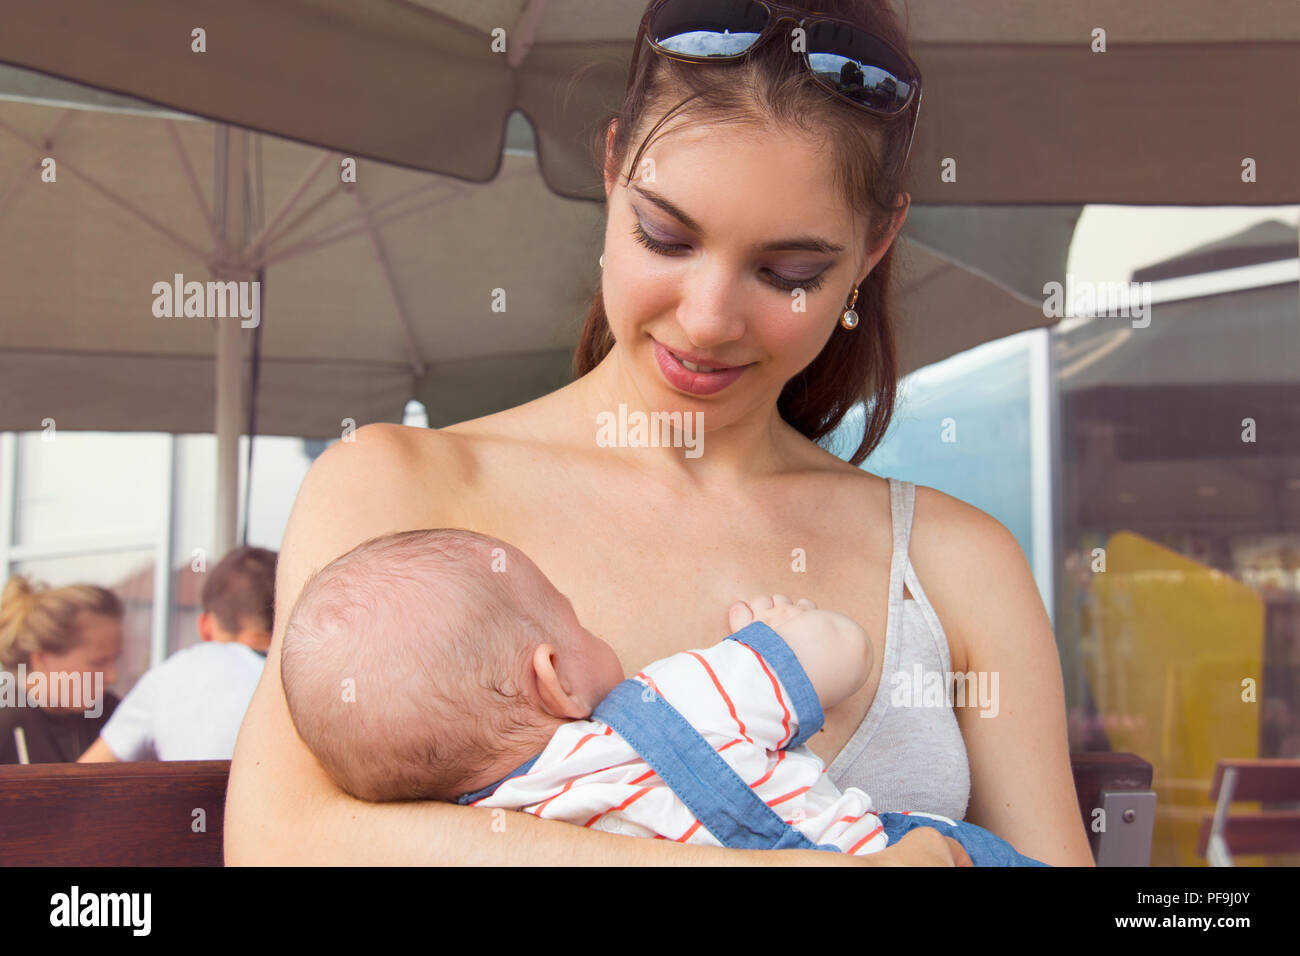 Felice madre allattamento neonato in luogo pubblico, donna con faccia allegra tenendo poco infantile al di fuori, bella signora sorridente al suo grazioso baby Foto Stock